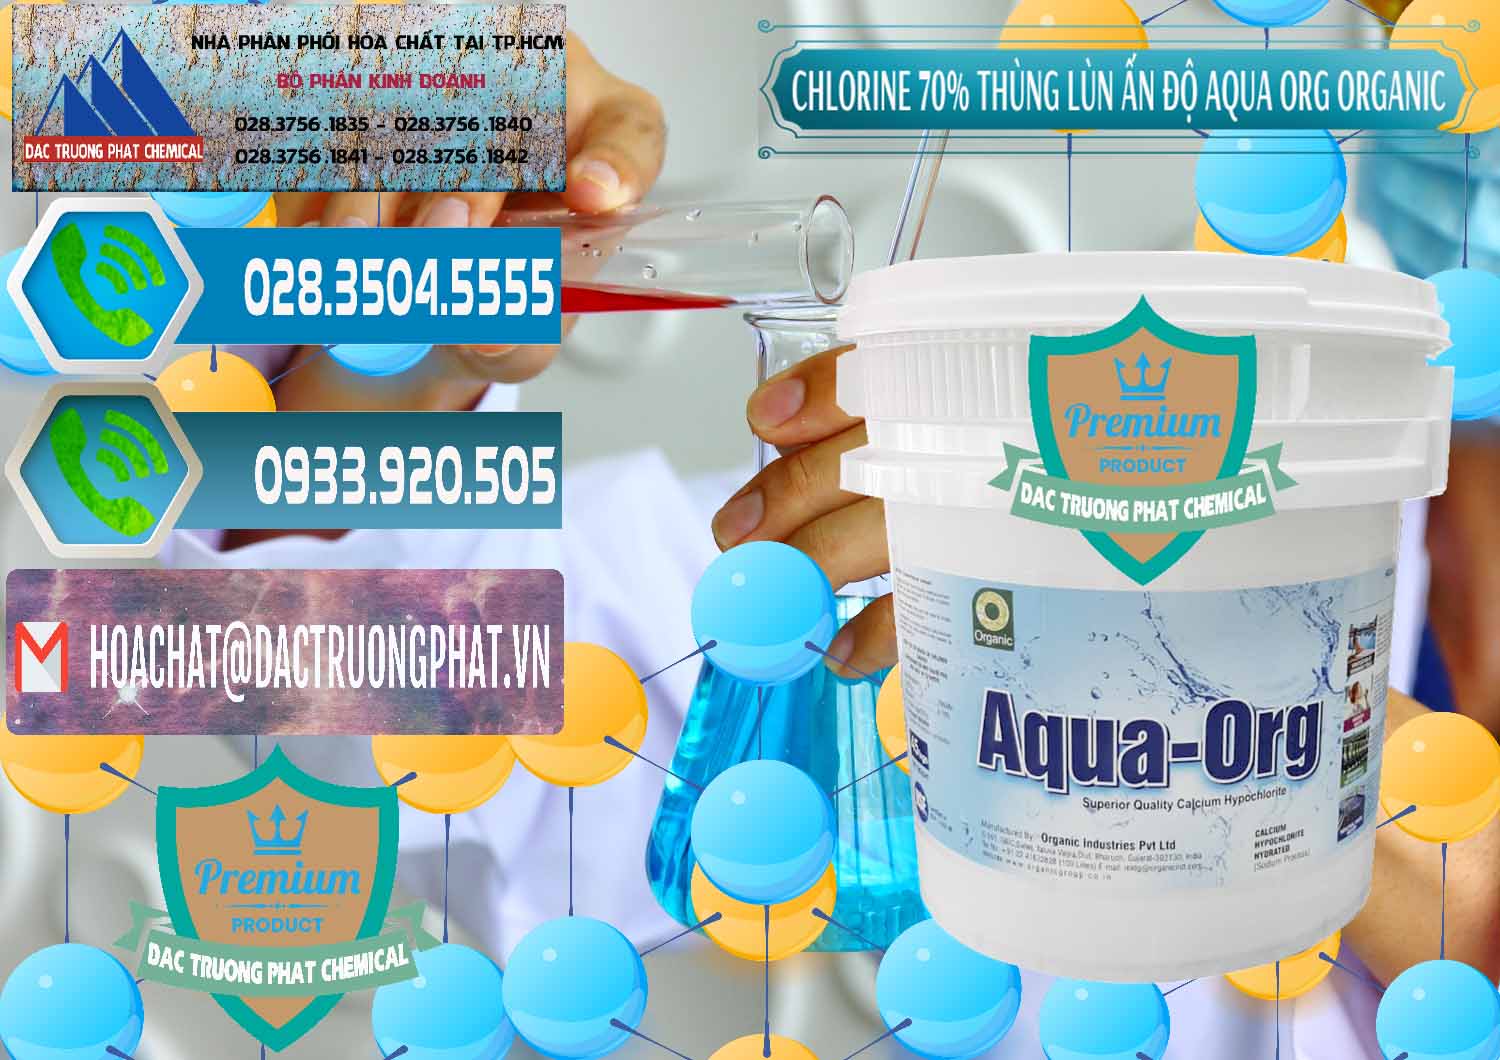 Cty chuyên phân phối ( bán ) Chlorine – Clorin 70% Thùng Lùn Ấn Độ Aqua ORG Organic India - 0212 - Cung cấp - nhập khẩu hóa chất tại TP.HCM - congtyhoachat.net